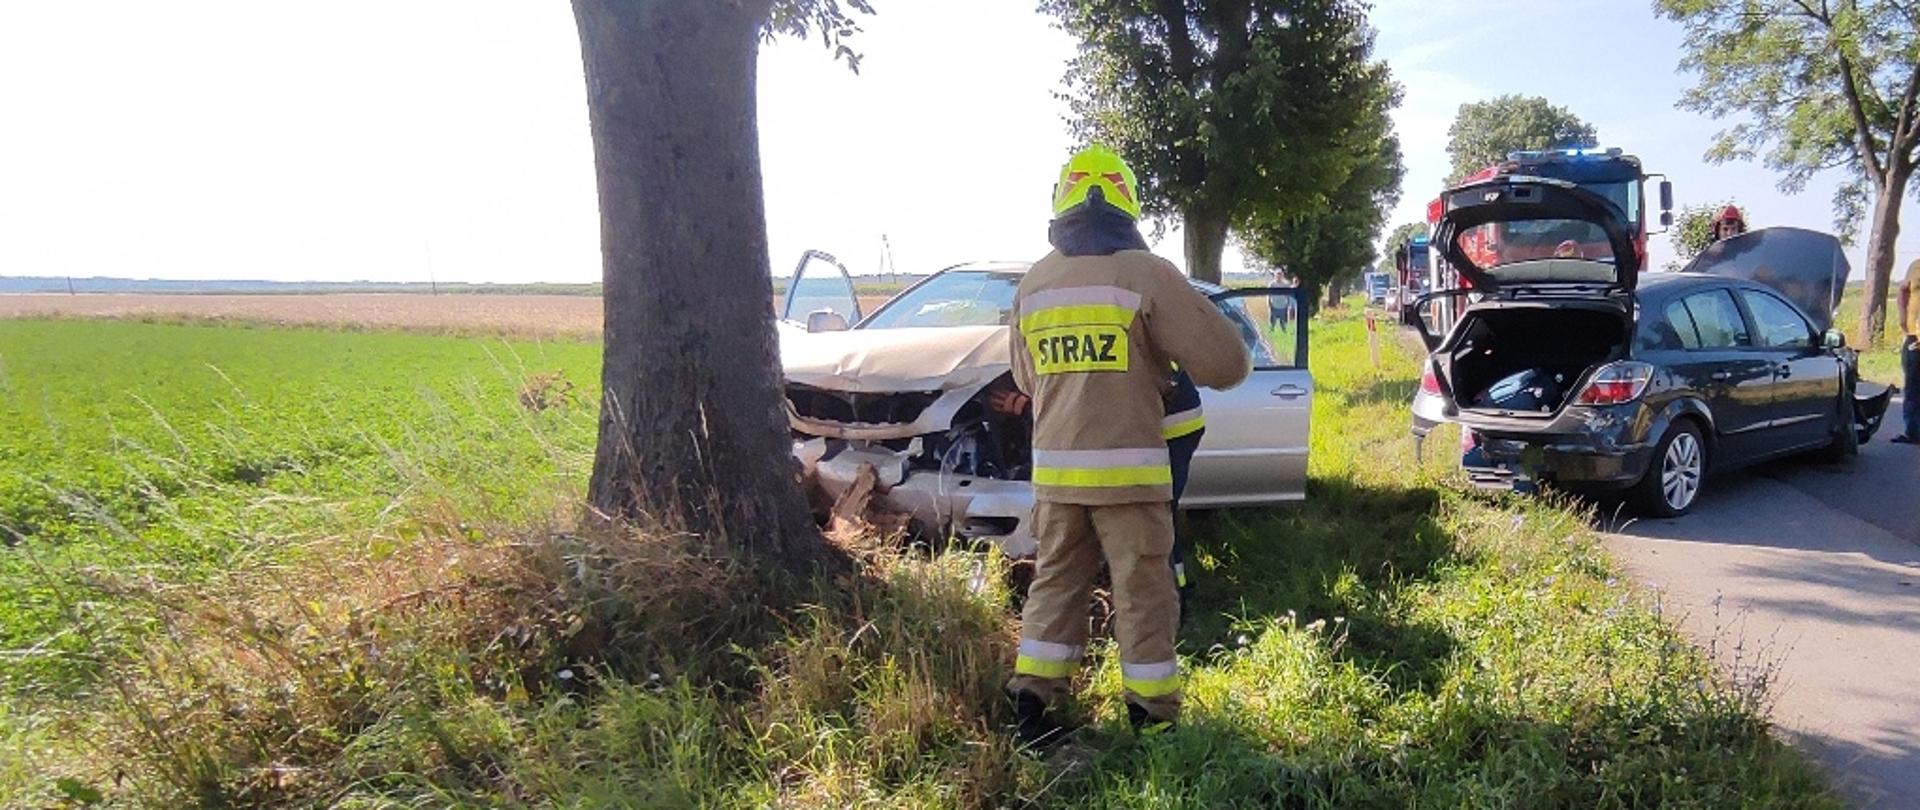 Zderzenie dwóch samochodów osobowych na drodze wojewódzkiej w pobliżu miejscowości Kluczewsko, na zdjęciu strażak w ubraniu specjalnym, odłączający akumulator w pojeździe, który uderzył w drzewo, drugi pojazd stoi na pasie jezdni, w oddali pojazdy pożarnicze.